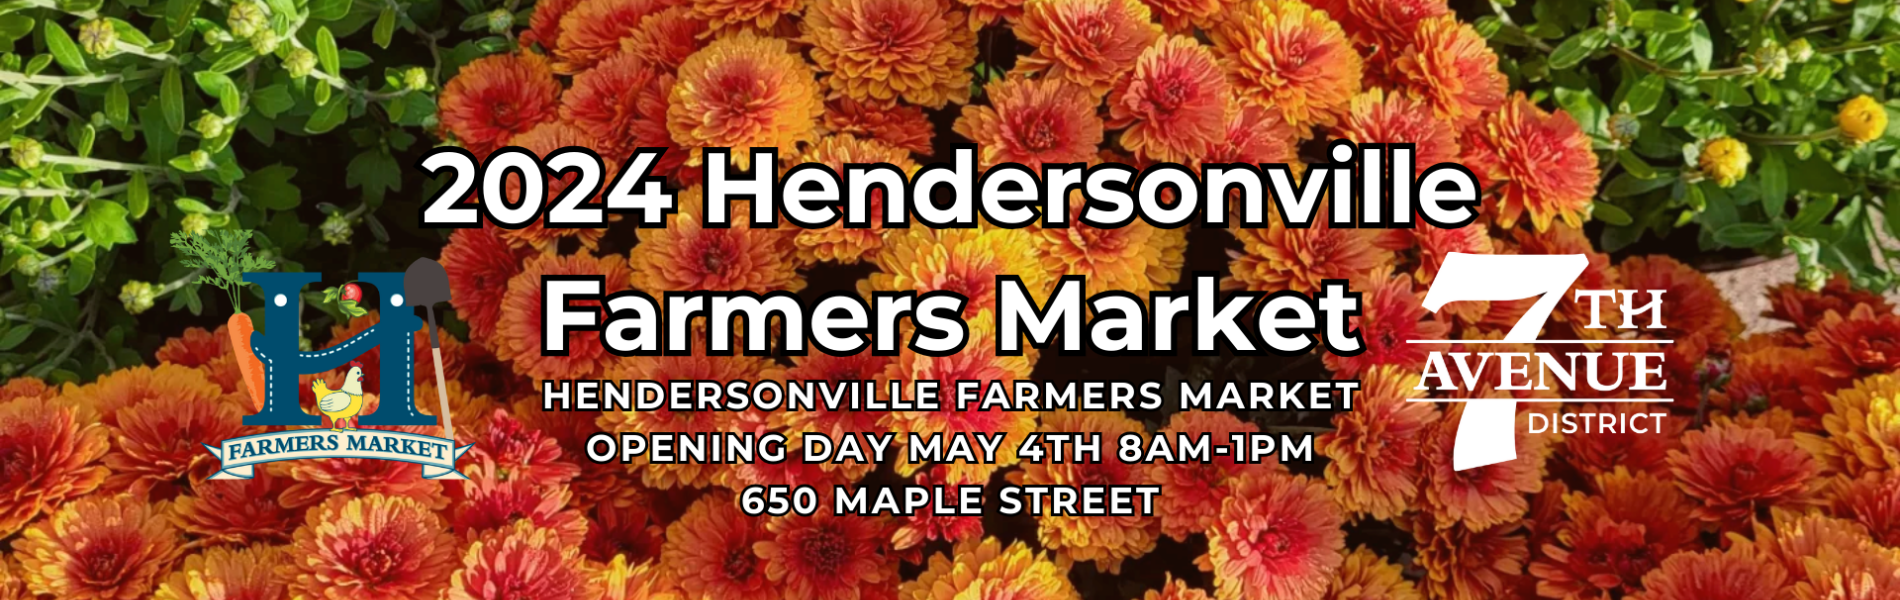 Hendersonville Farmers Market Opening Day 